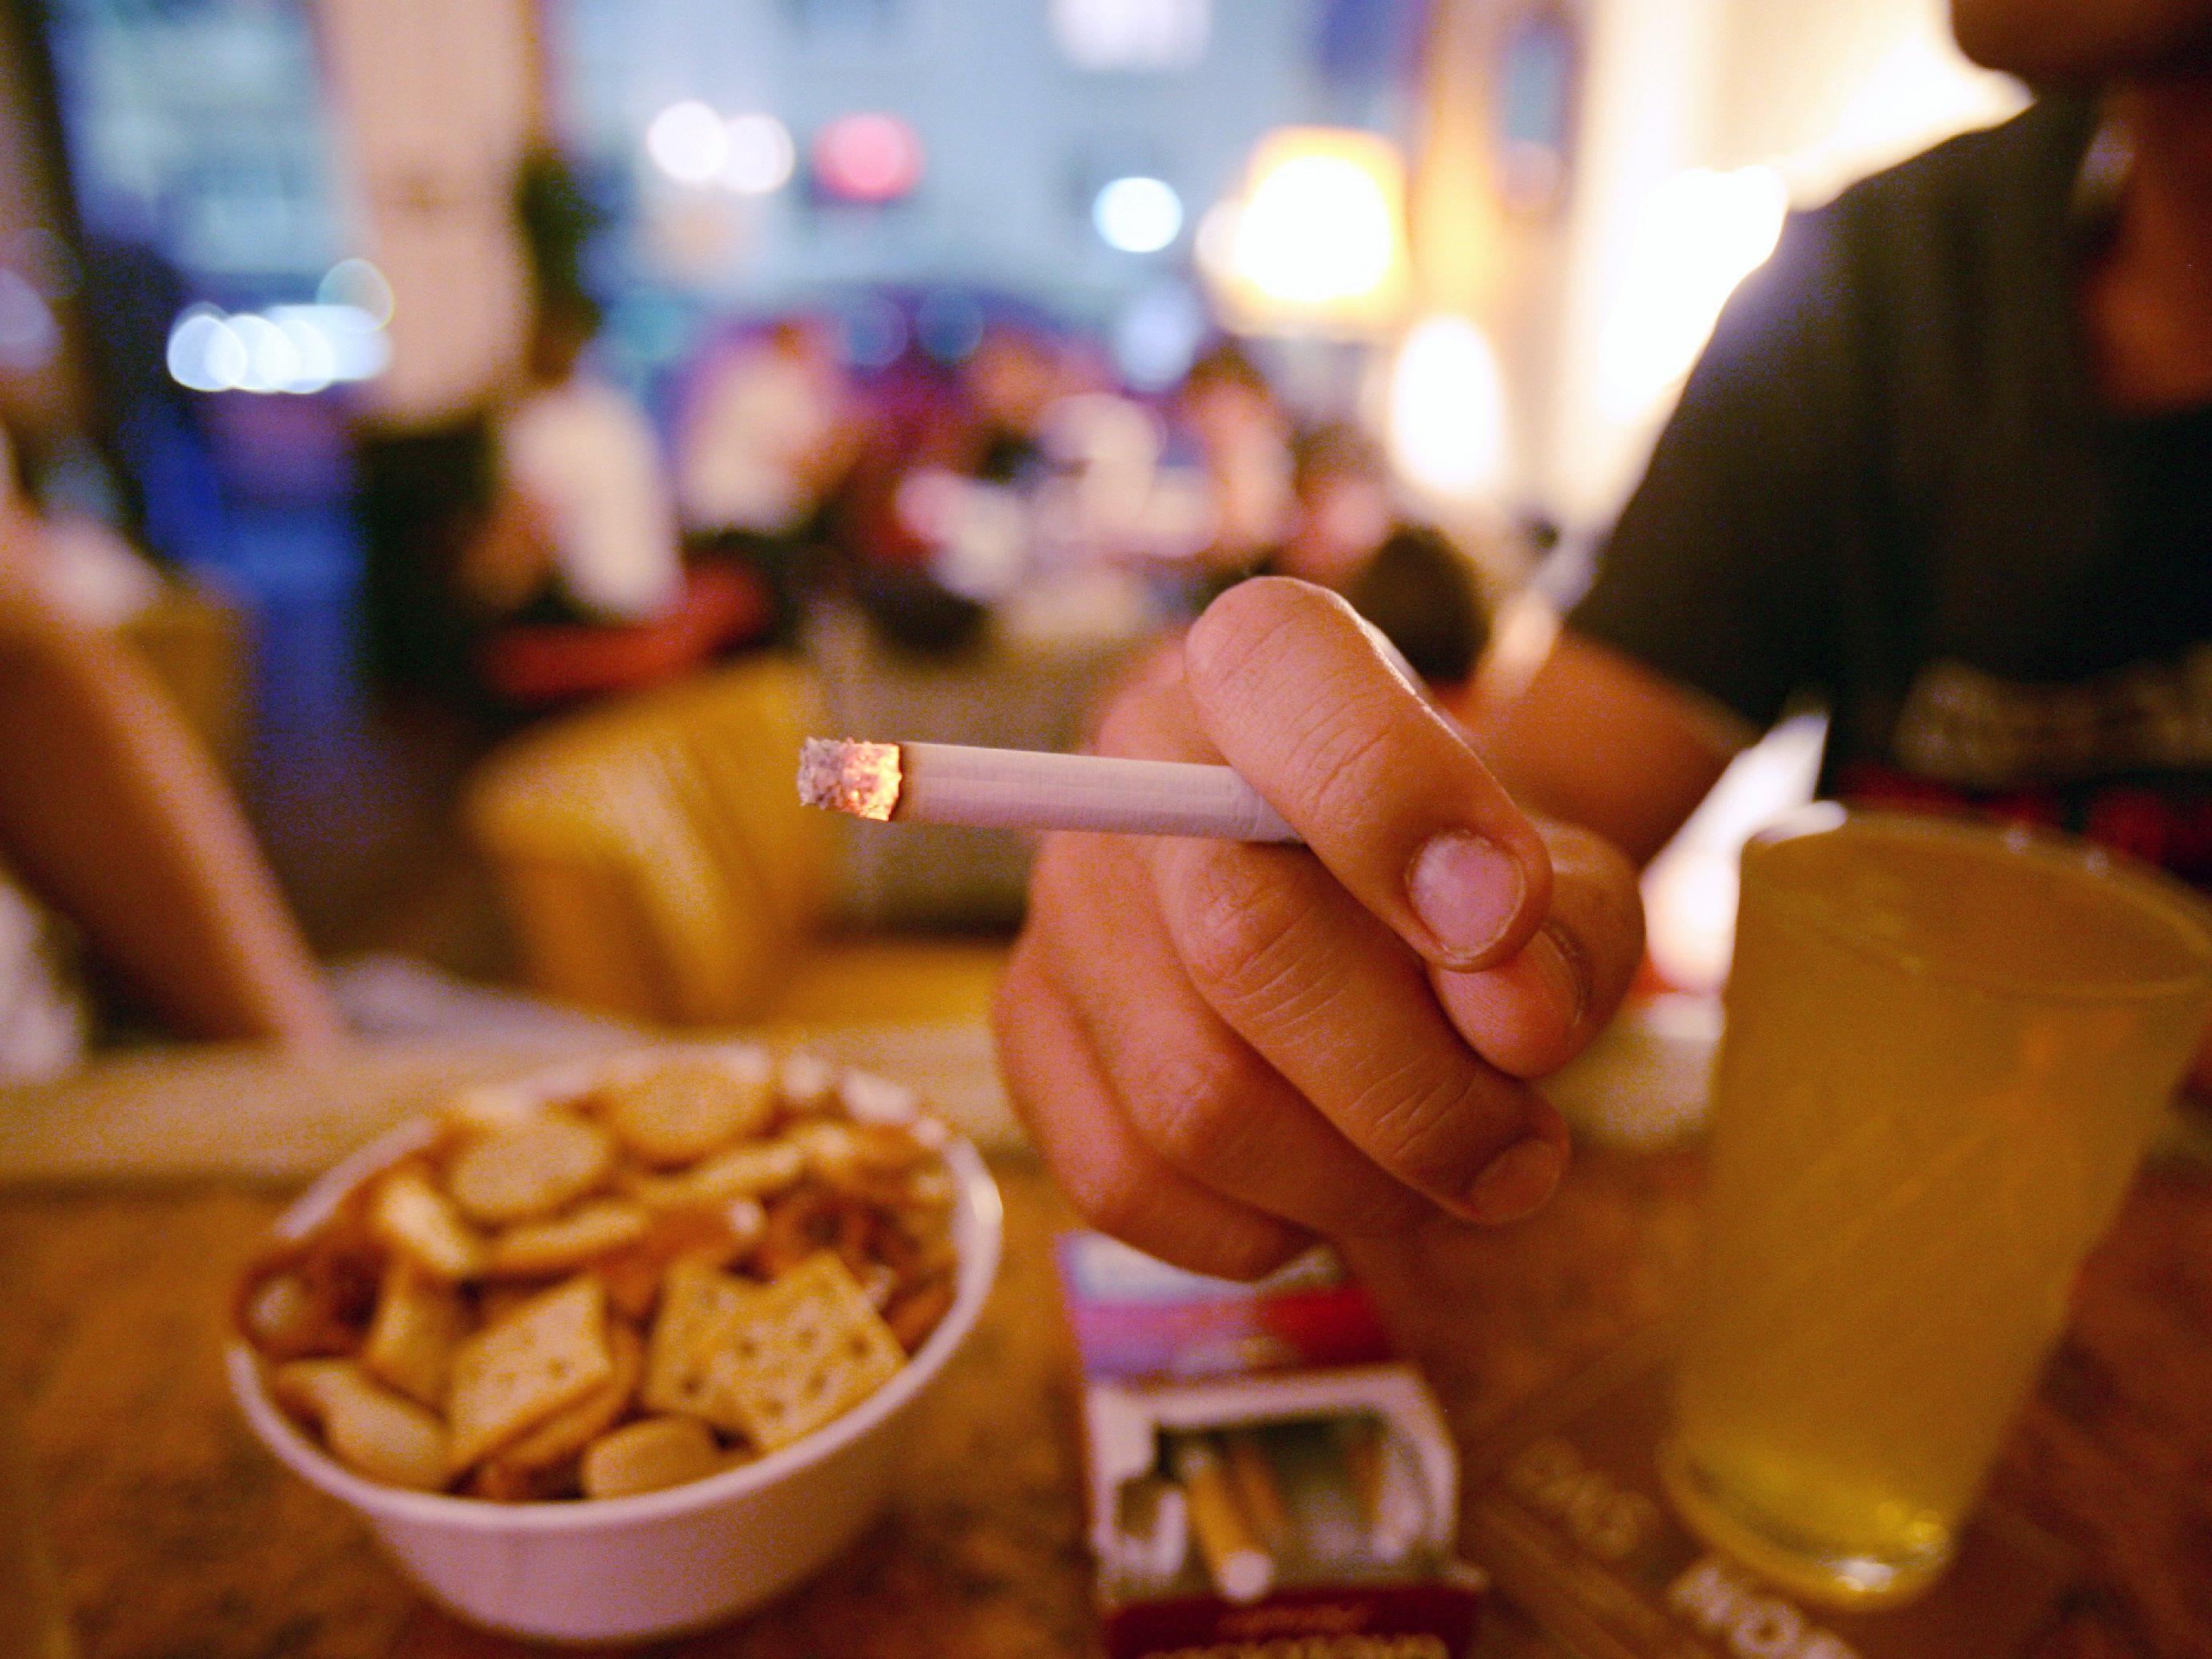 Rauchen - Grünen drängen auf mehr Prävention bei jungen Menschen